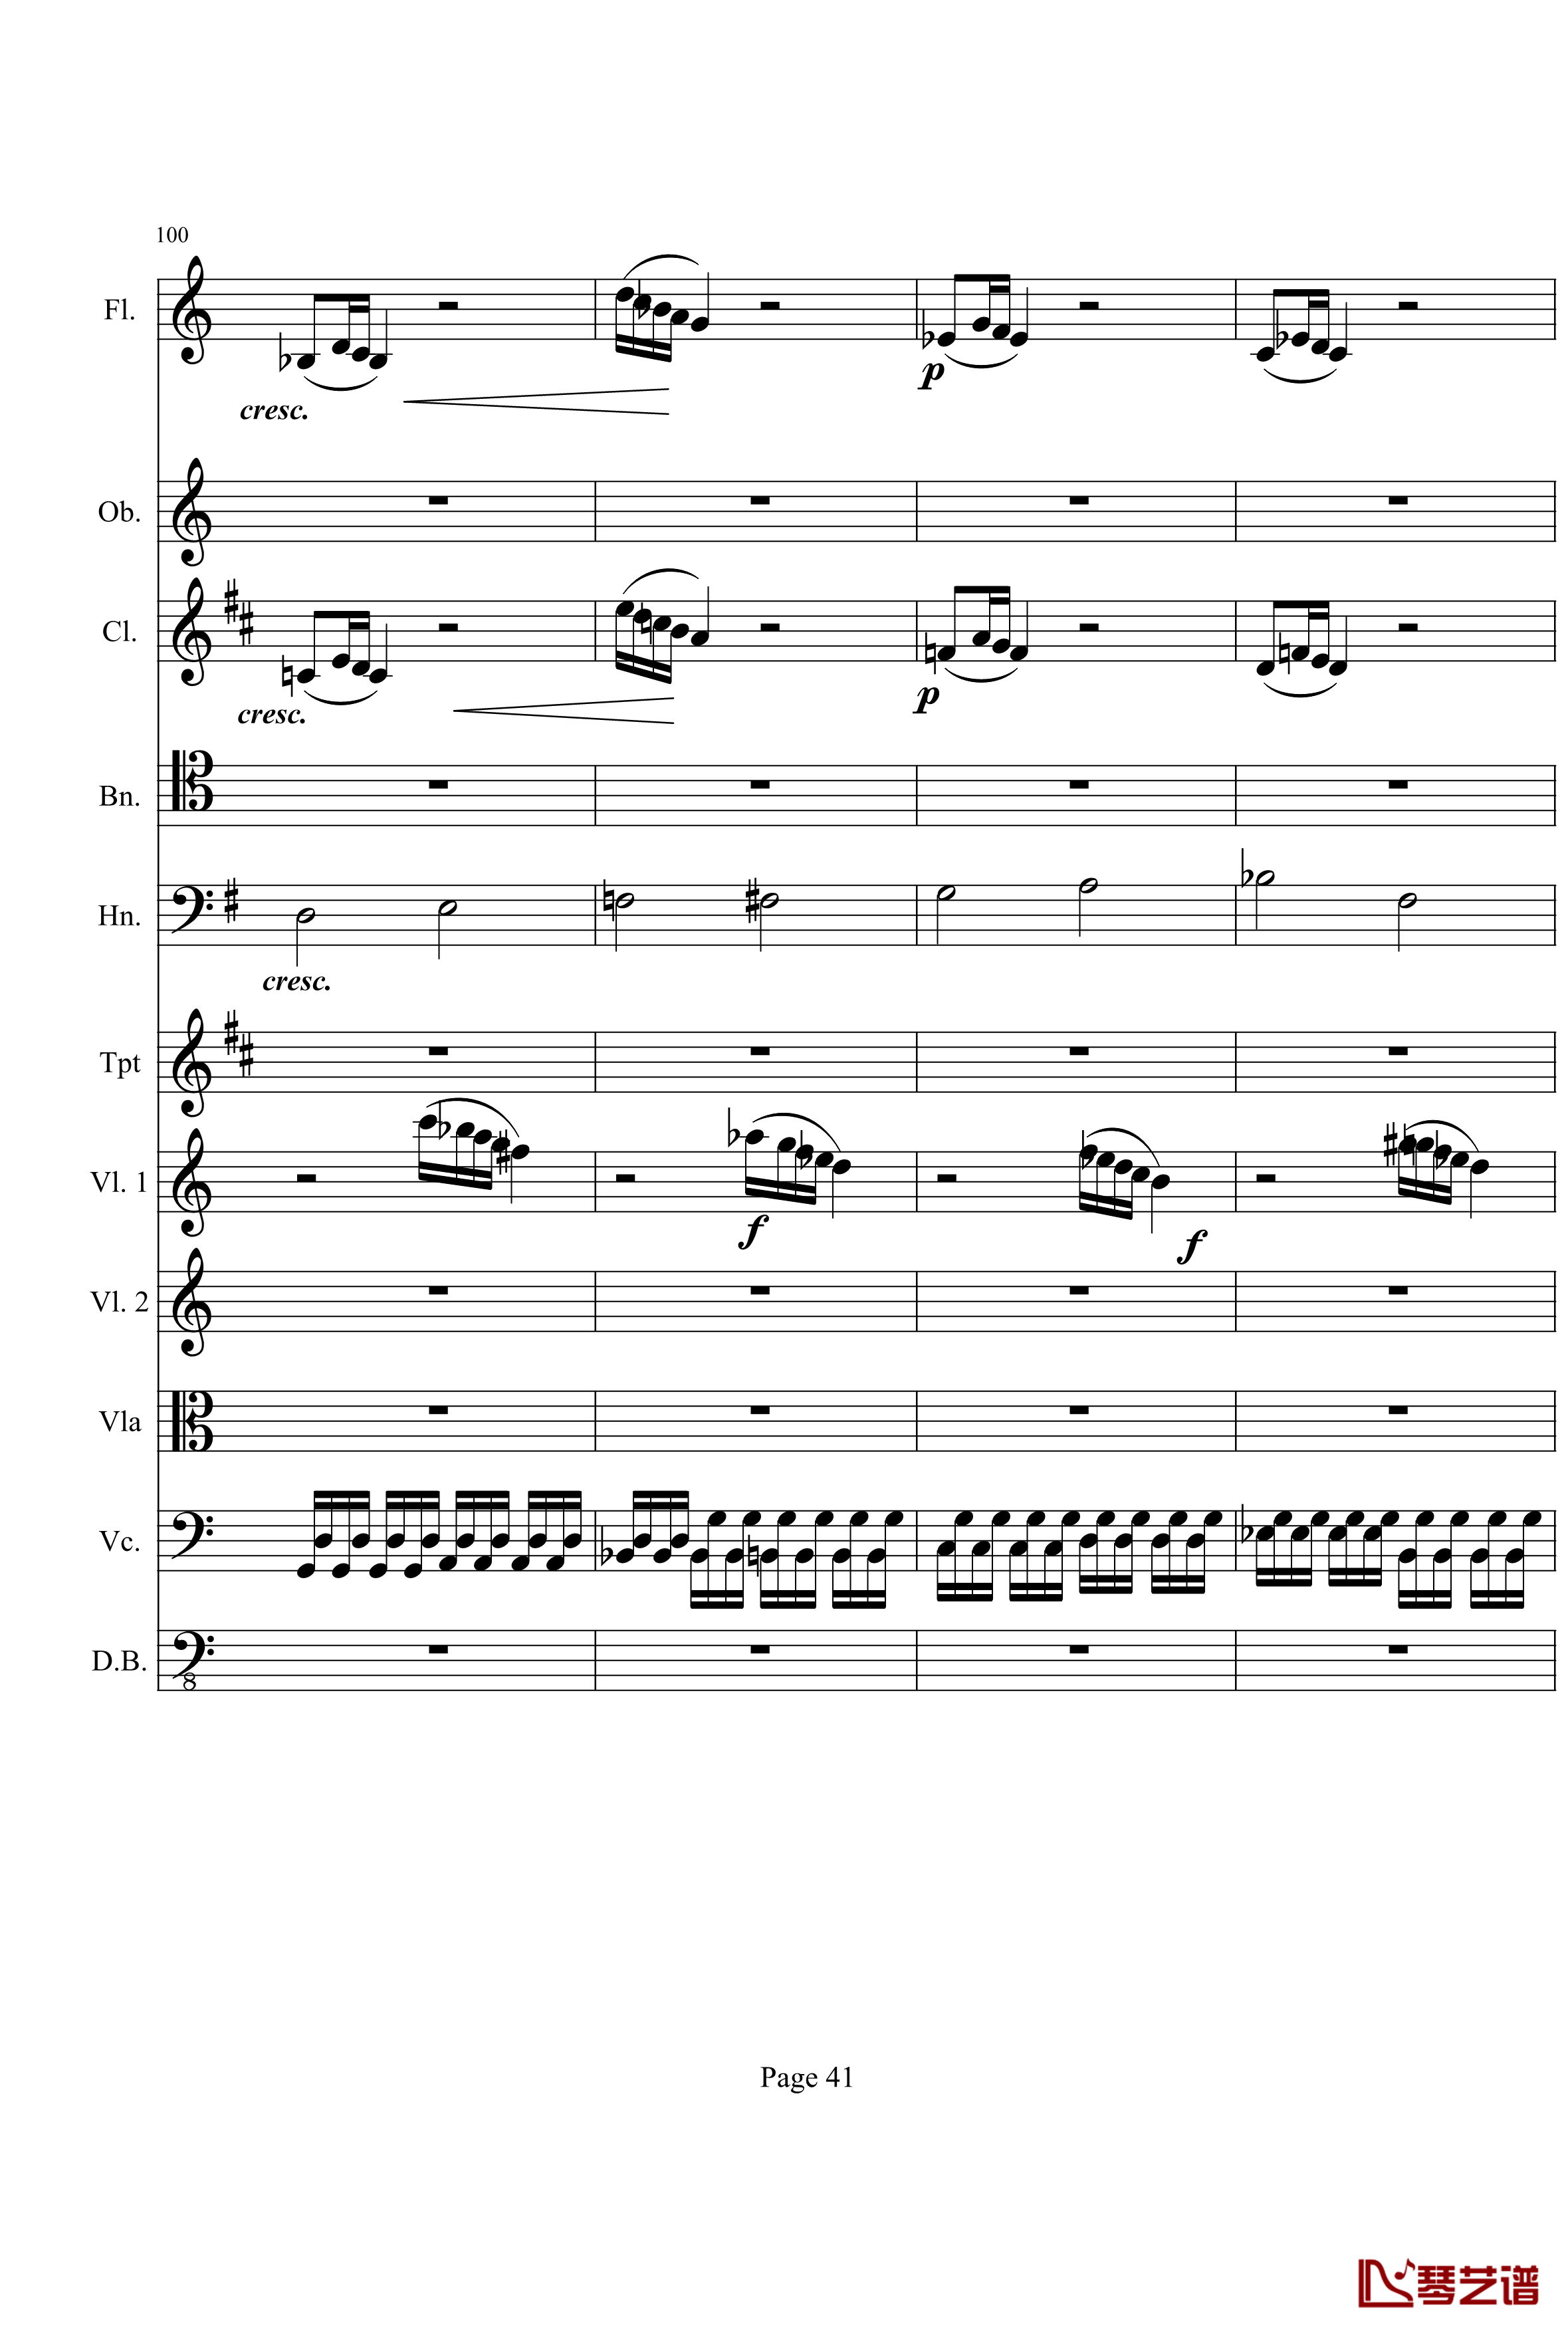 奏鸣曲之交响钢琴谱-第21-Ⅰ-贝多芬-beethoven41